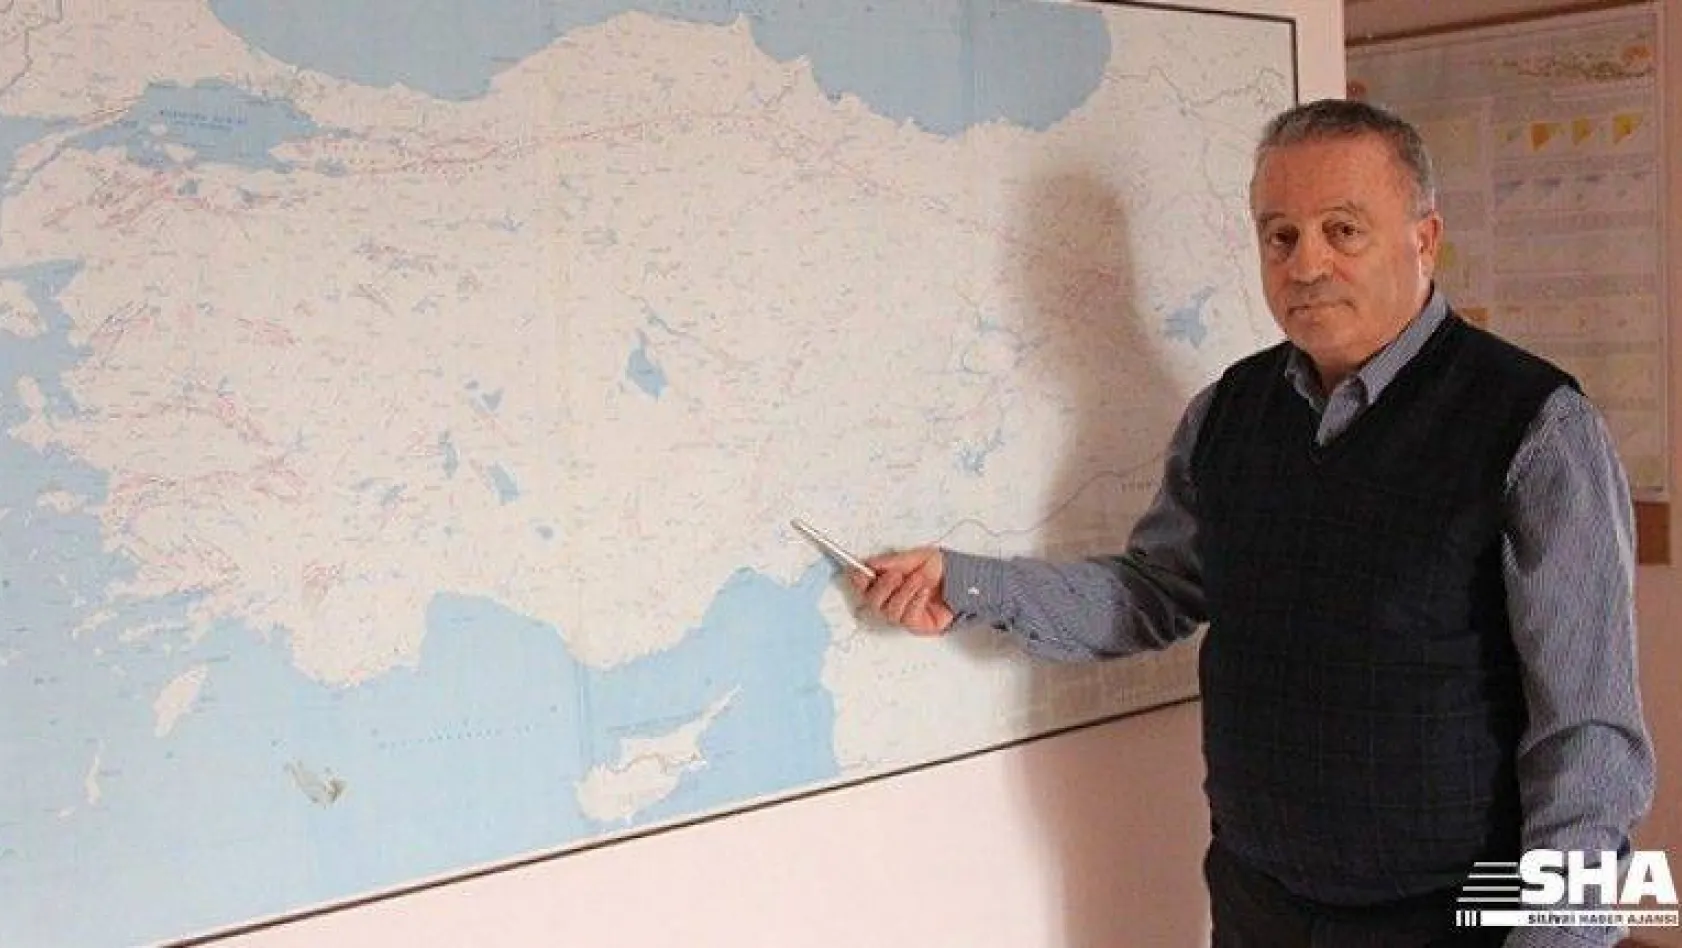 İnan: 'Marmara'da 7'den büyük bir depremin olma olasılığı güçlü'